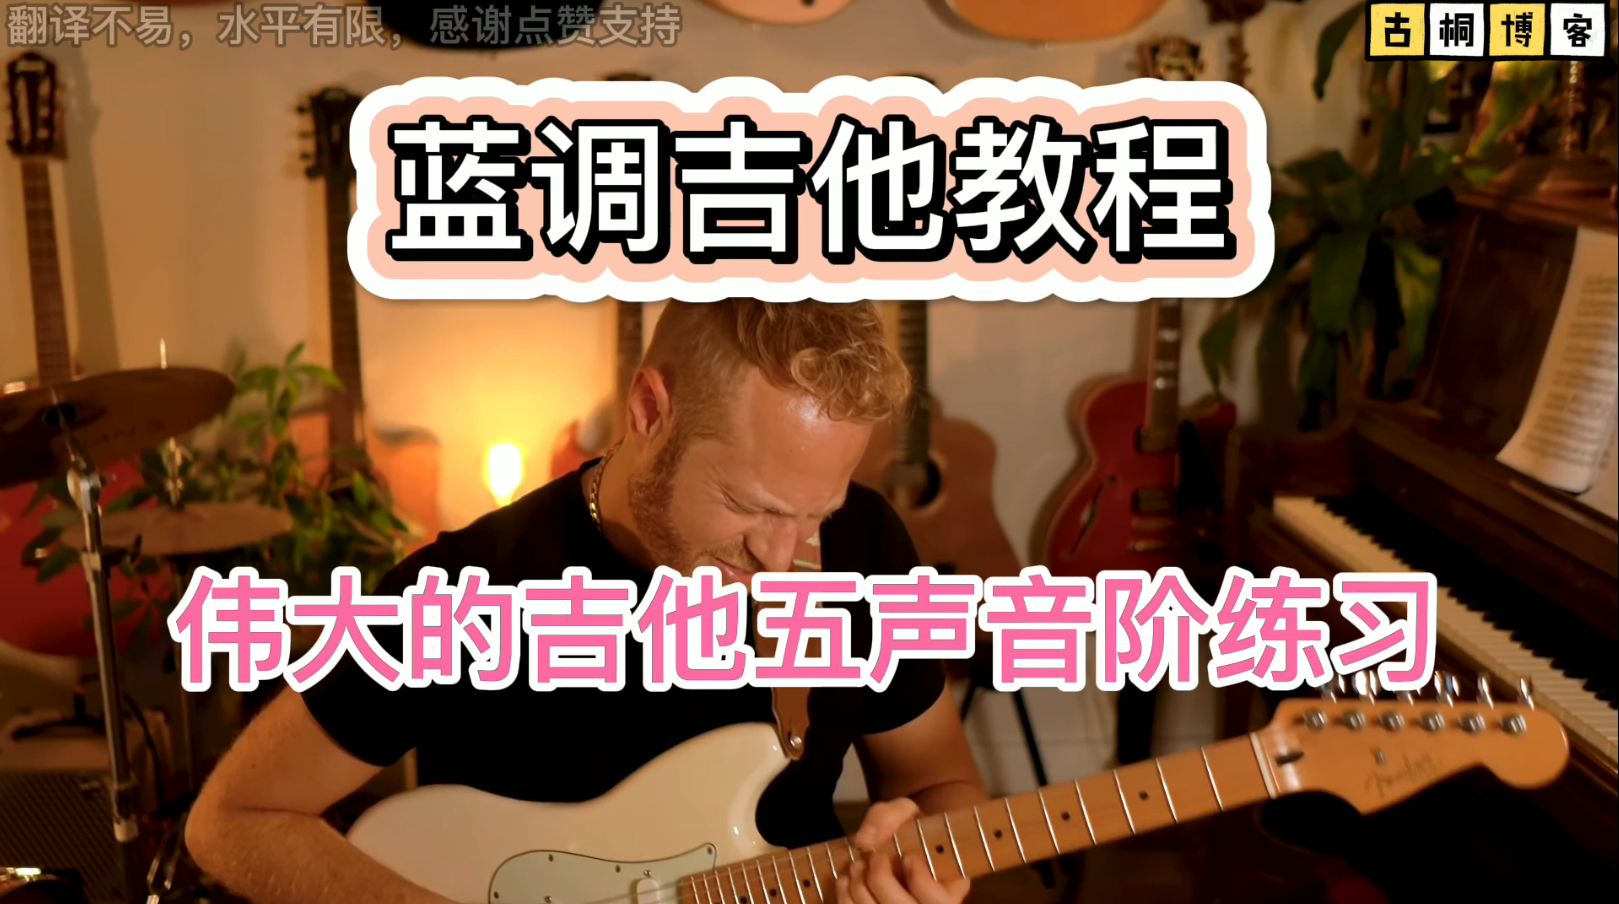 蓝调吉他教程| 伟大的吉他五声音阶练习《中文字幕》-古桐博客